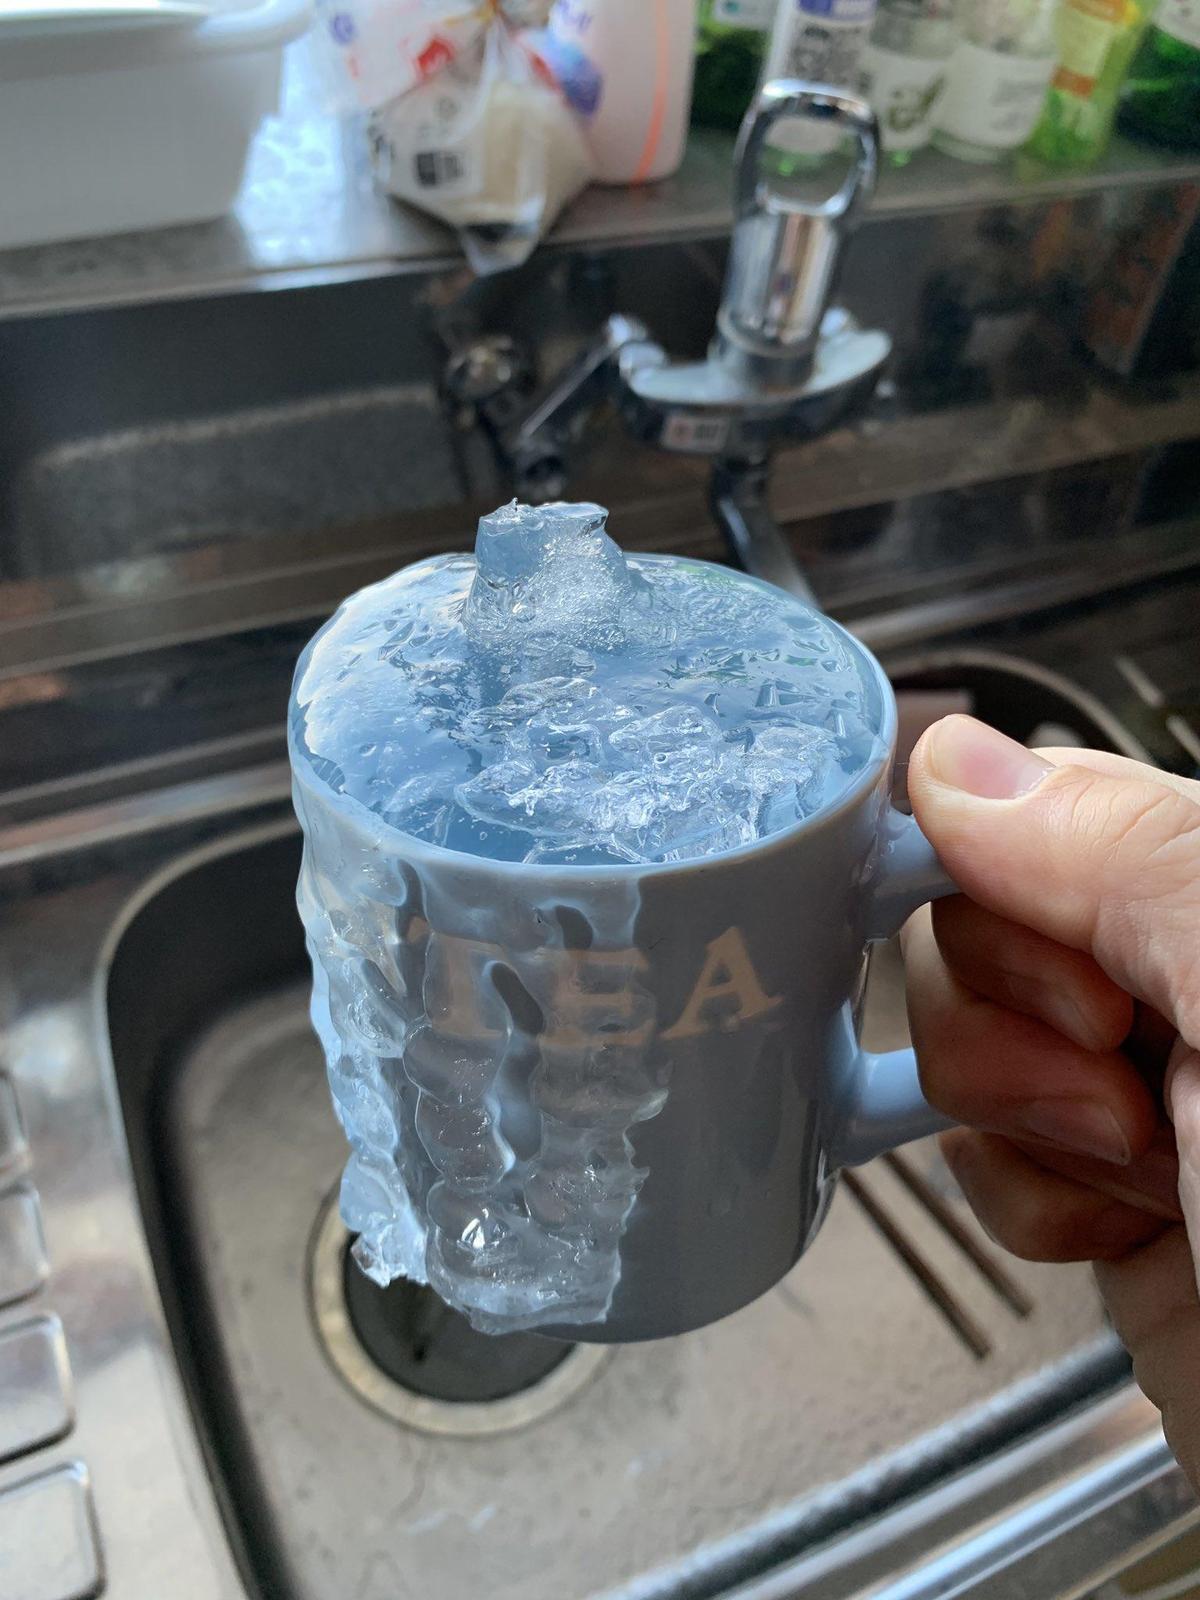 原po還補上結冰馬克杯照片，只見杯身溢出的水也跟著結冰，他搞笑自嘲「它已變成新的設計了」。（翻攝自@hasetaku推特）